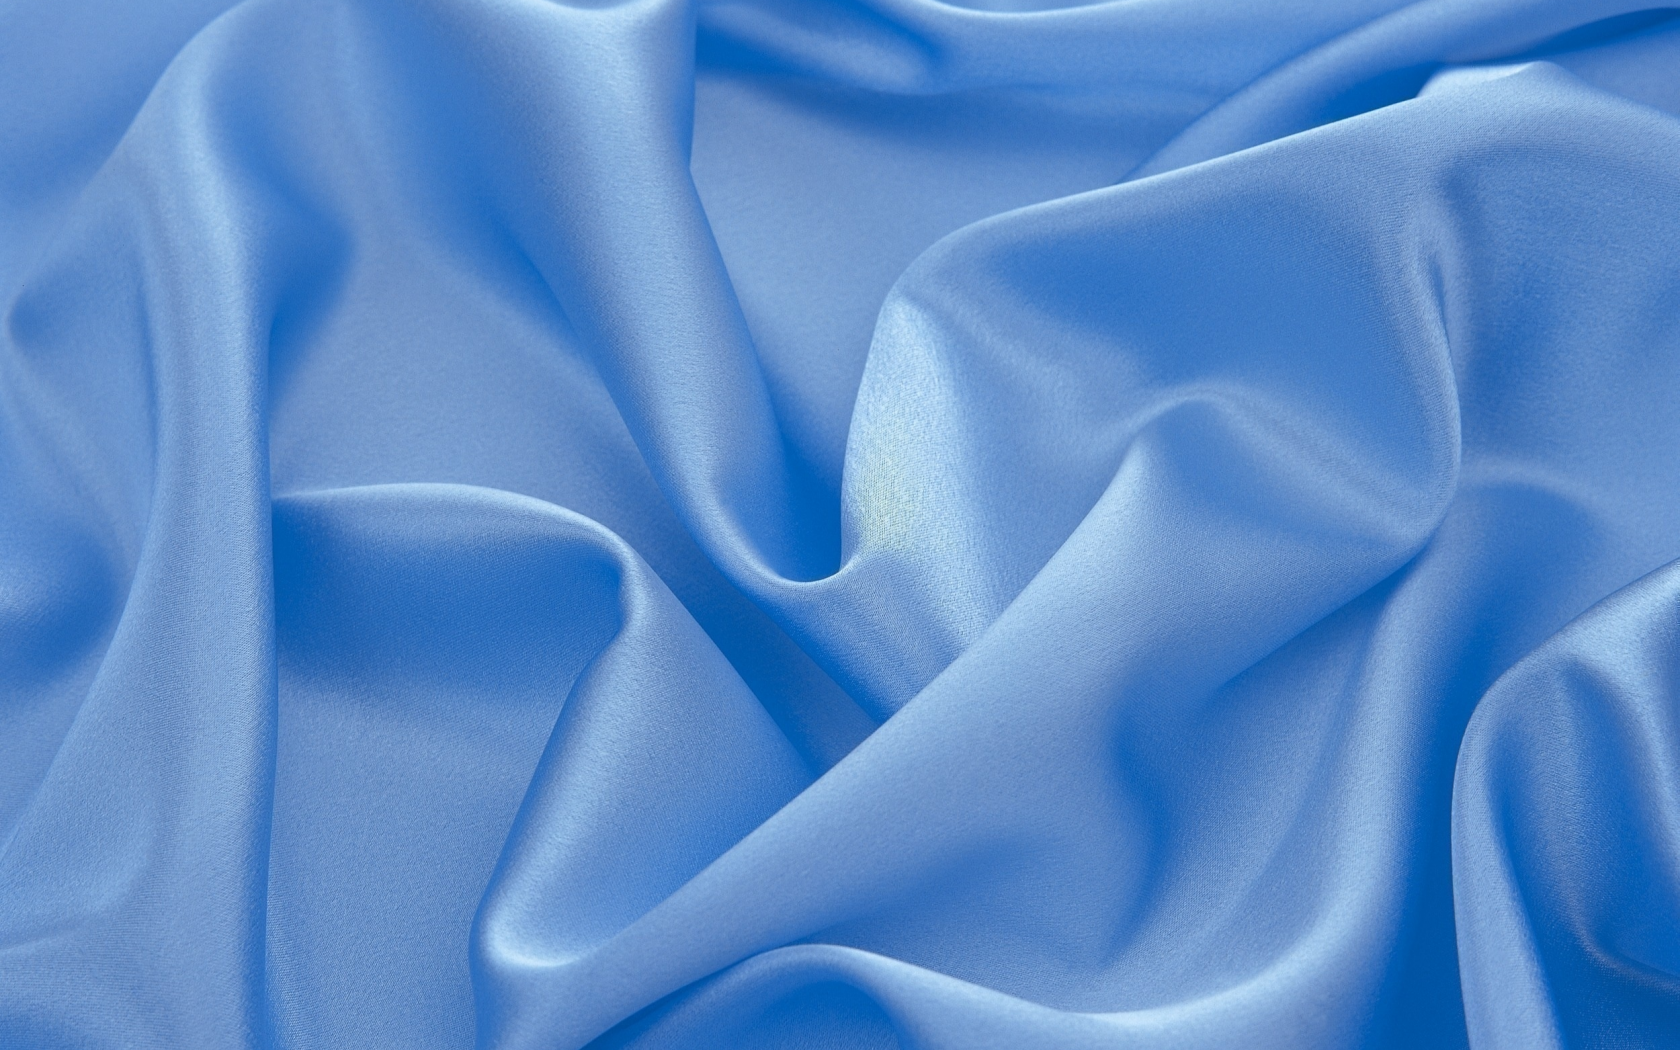 текстура, складки, ткань, голубая, светлая